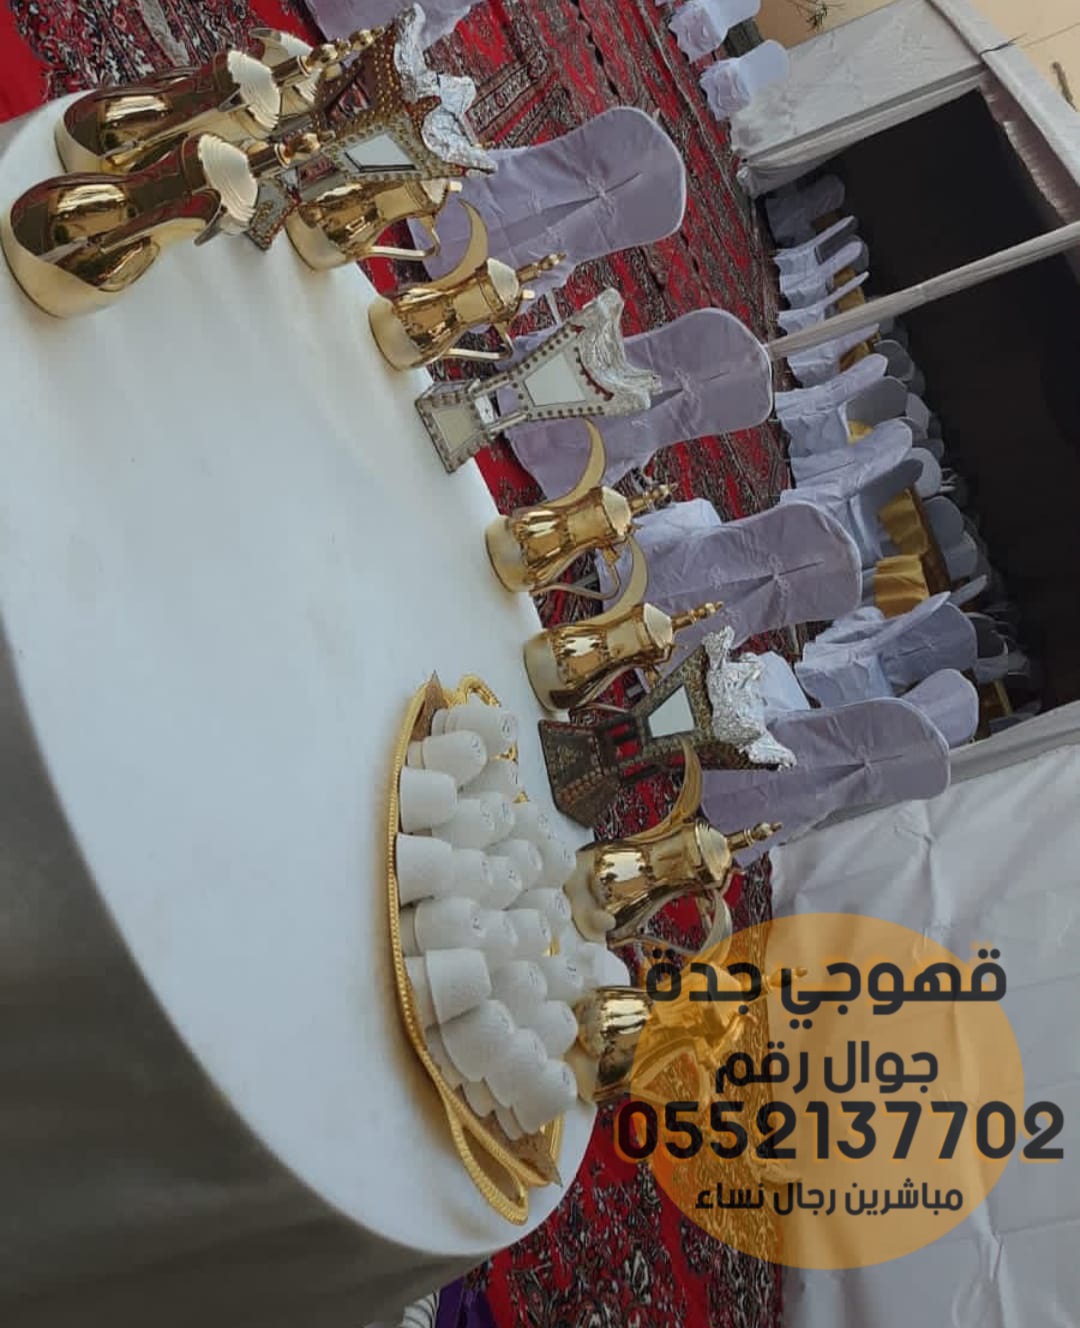 مباشرات زواج قهوجي قهوة في جدة 0552137702